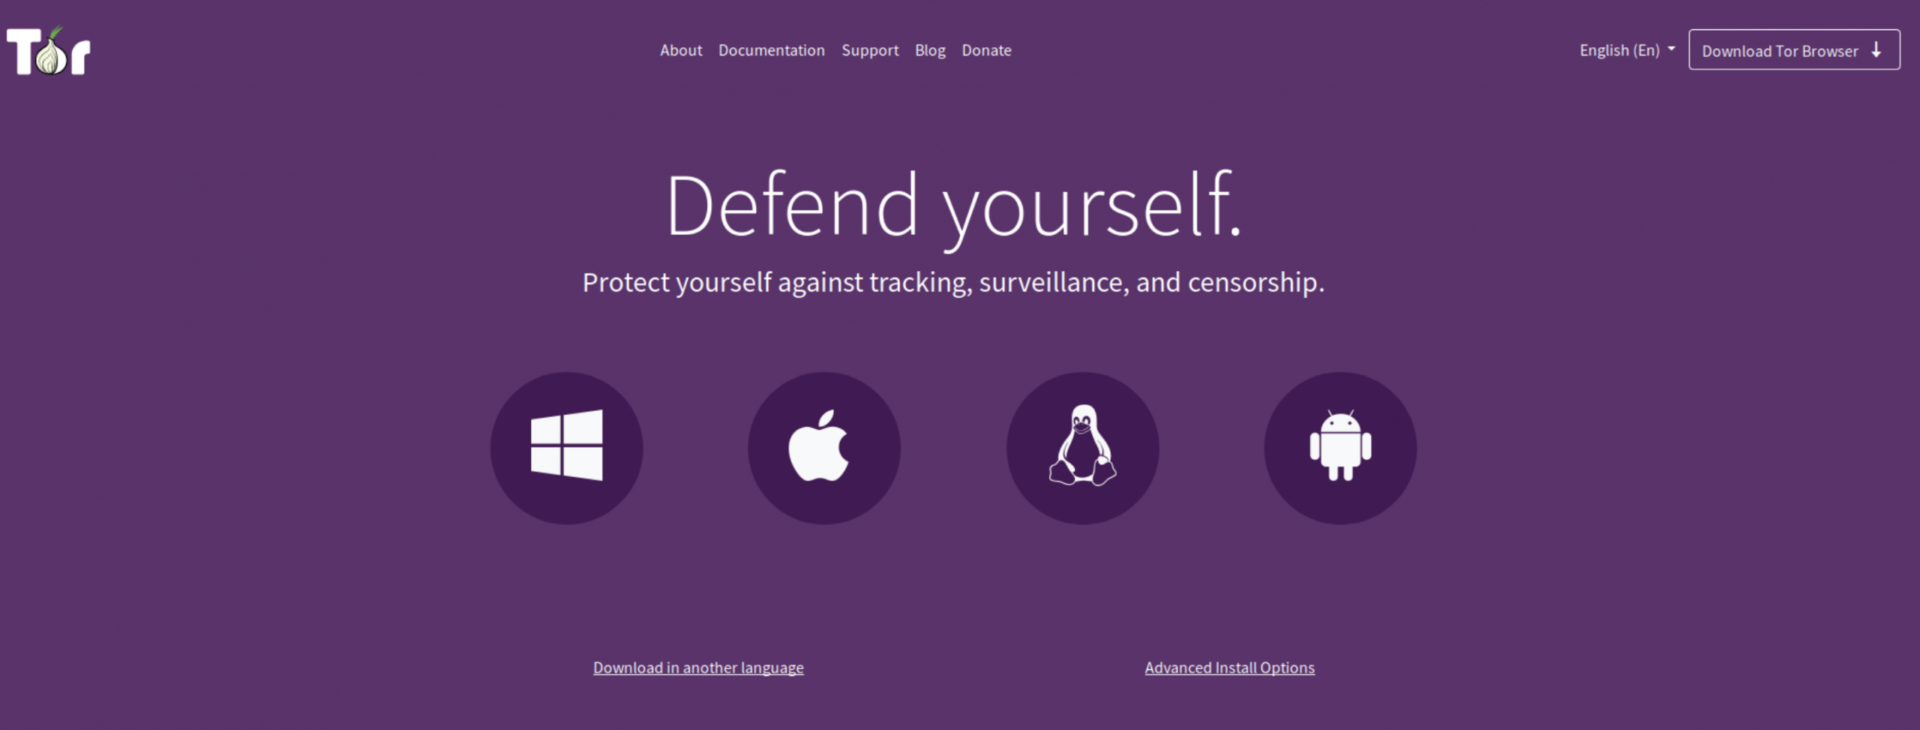 帶有紫色背景的Tor瀏覽器